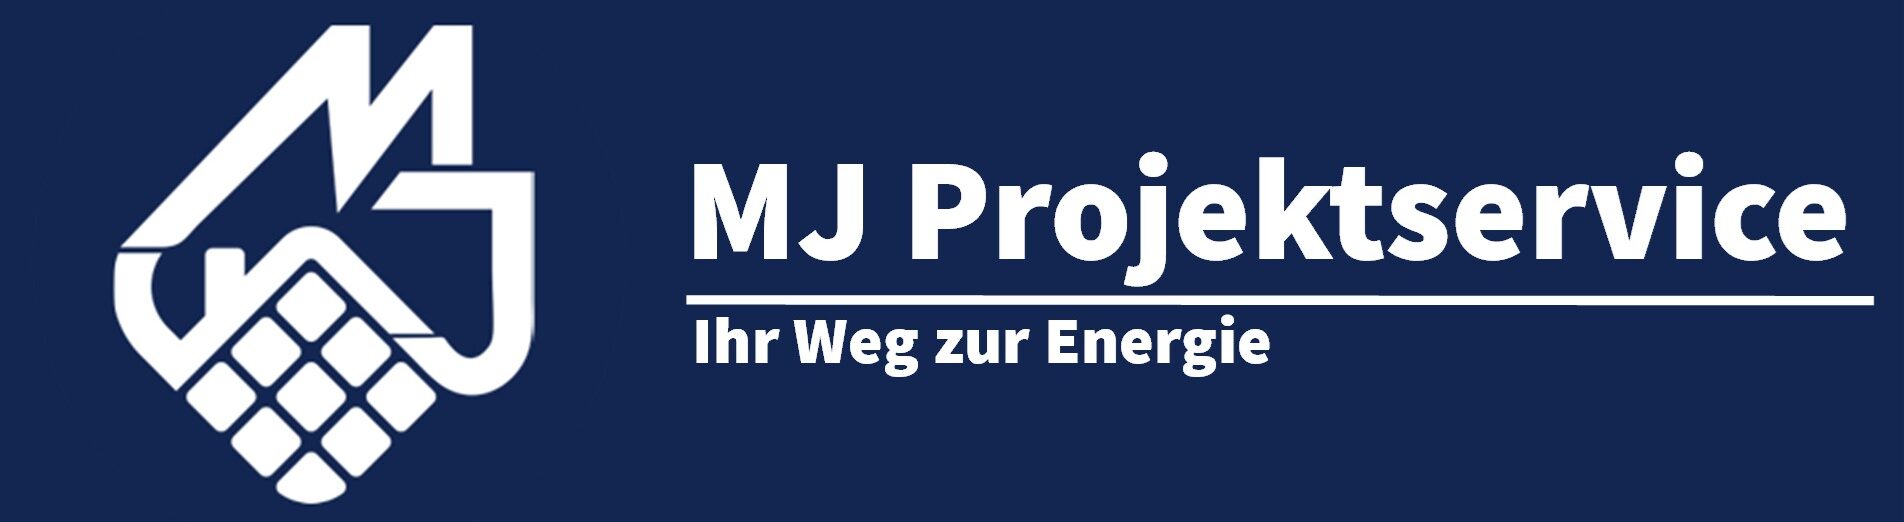 mj-projektservice